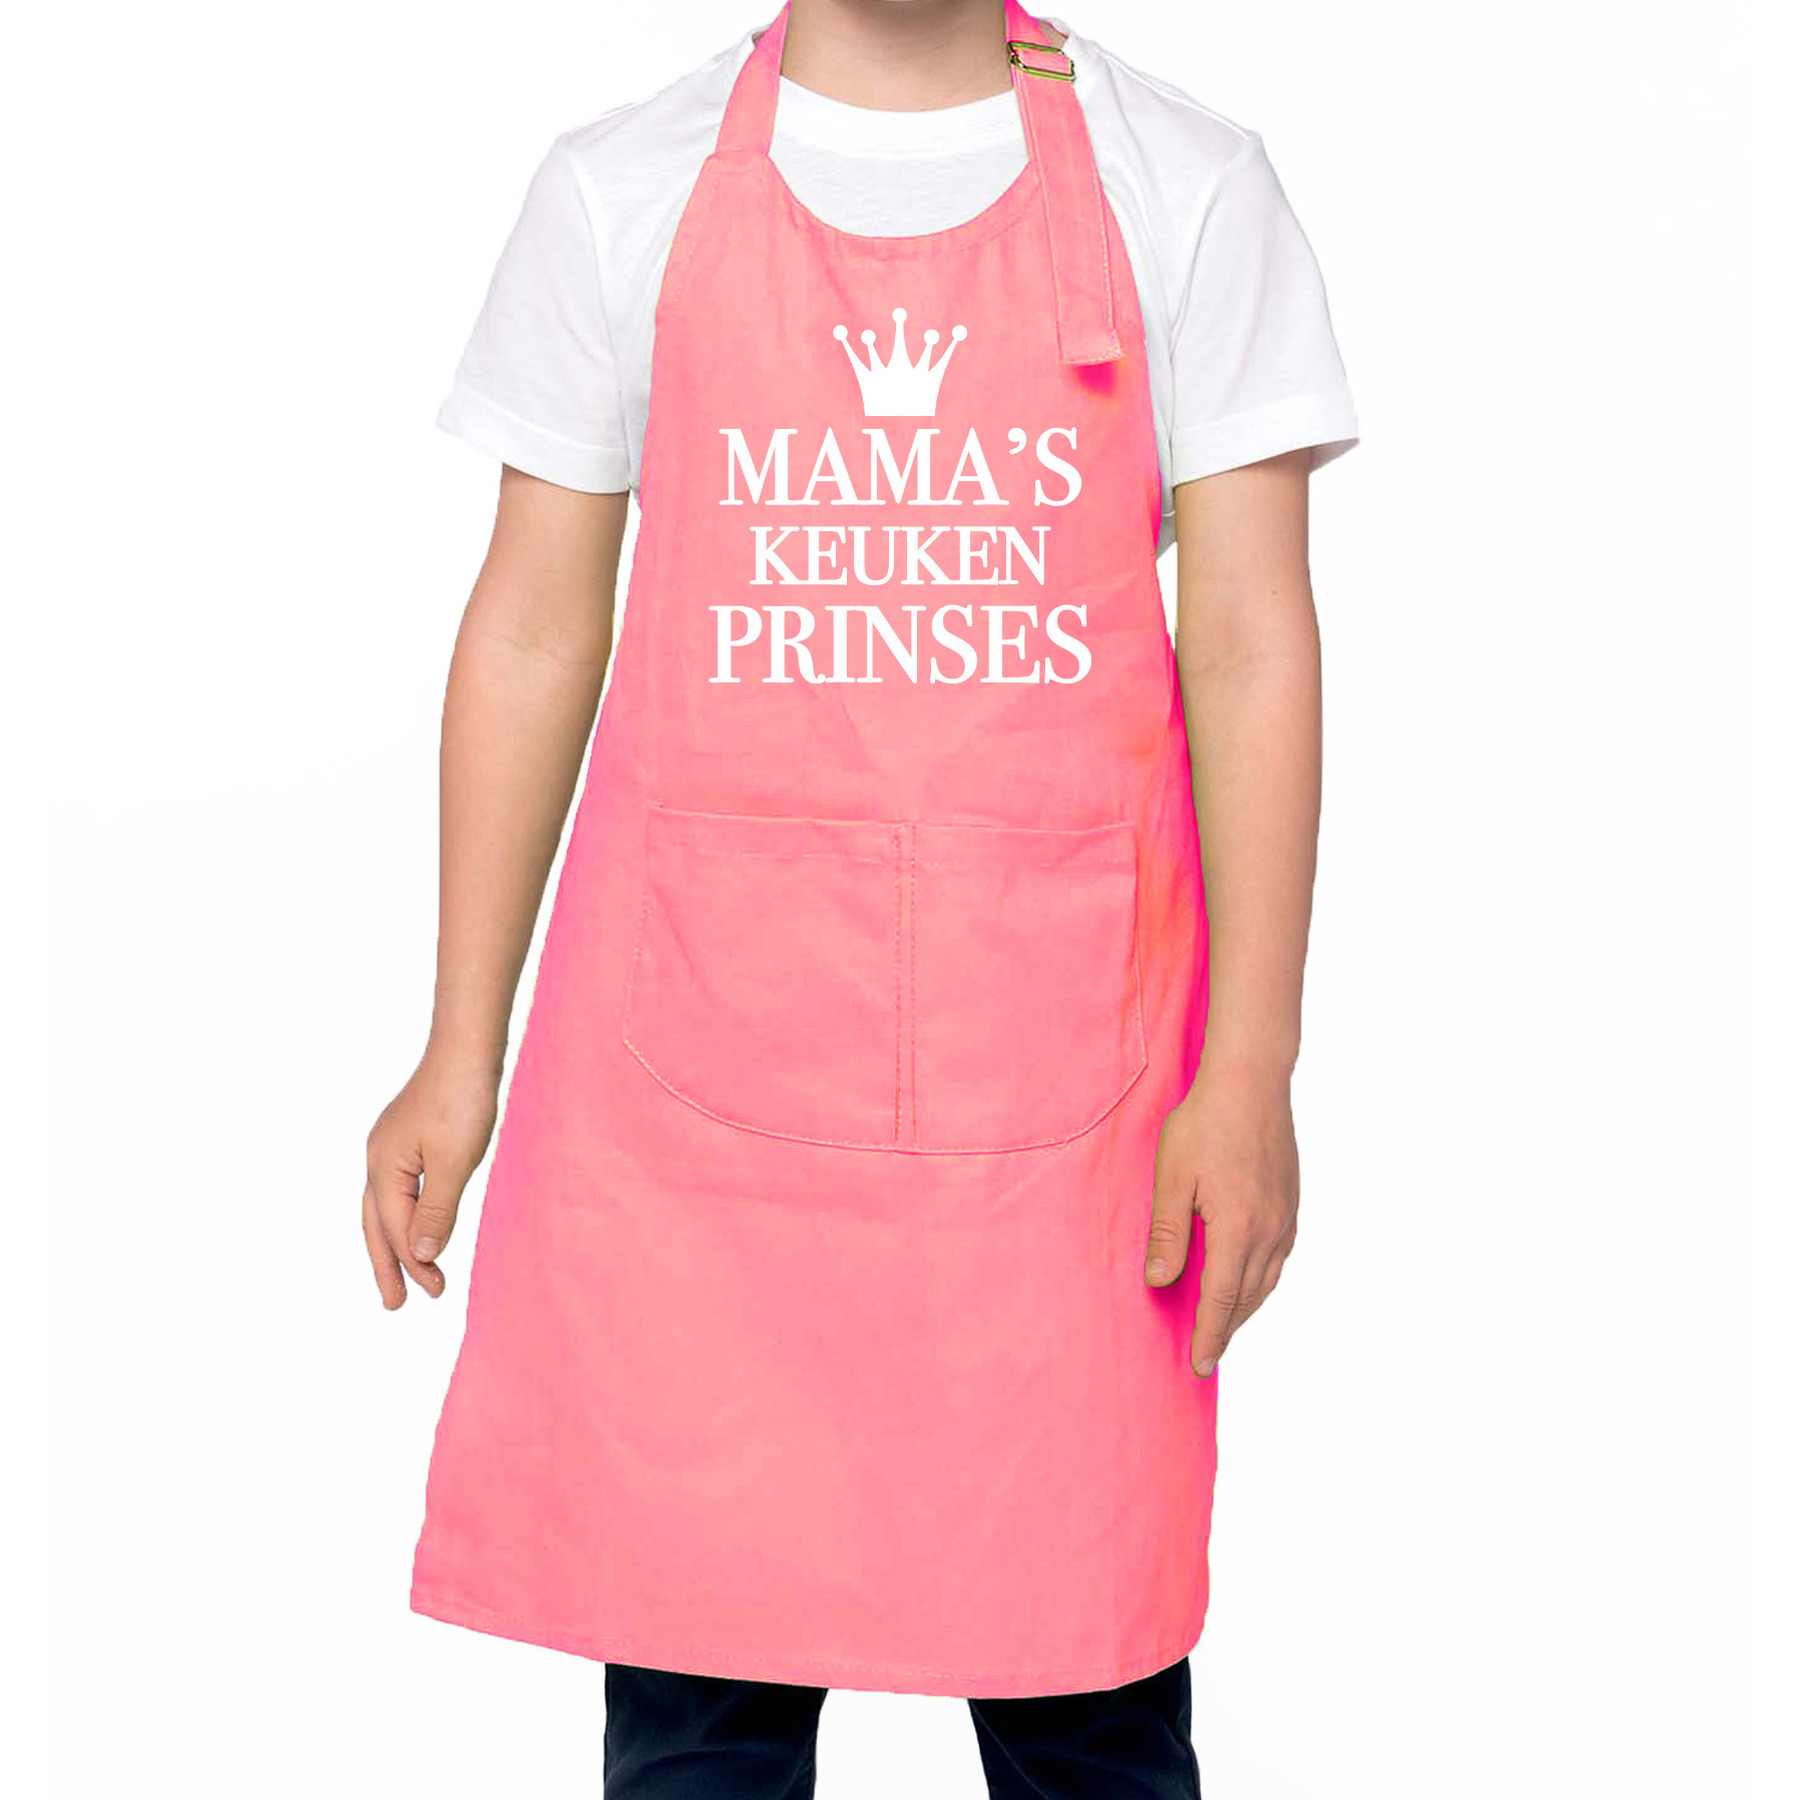 Mama s keukenprinses Keukenschort kinderen/ kinder schort roze voor meisjes One size -